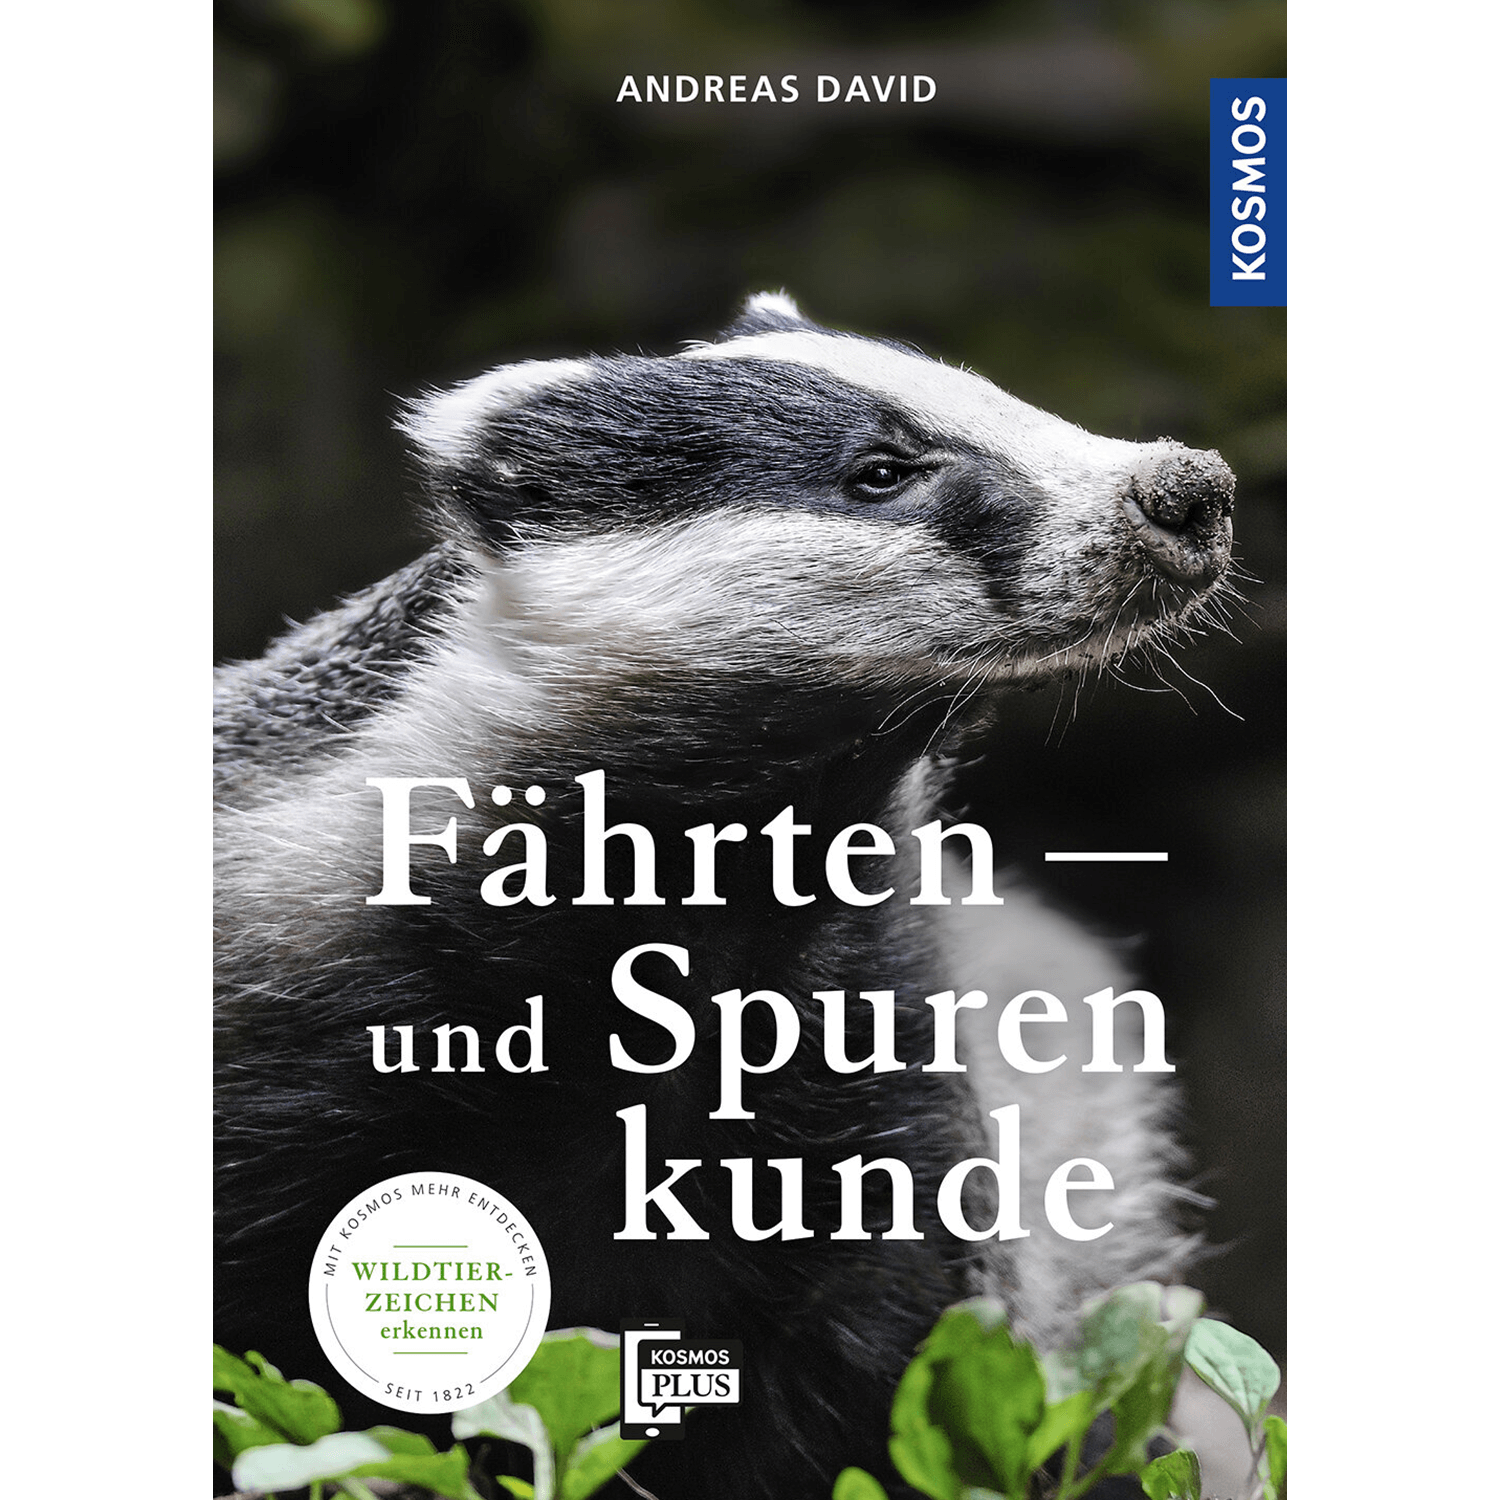 Fährten- und Spurenkunde - Buch - Andreas David - Jagdbücher